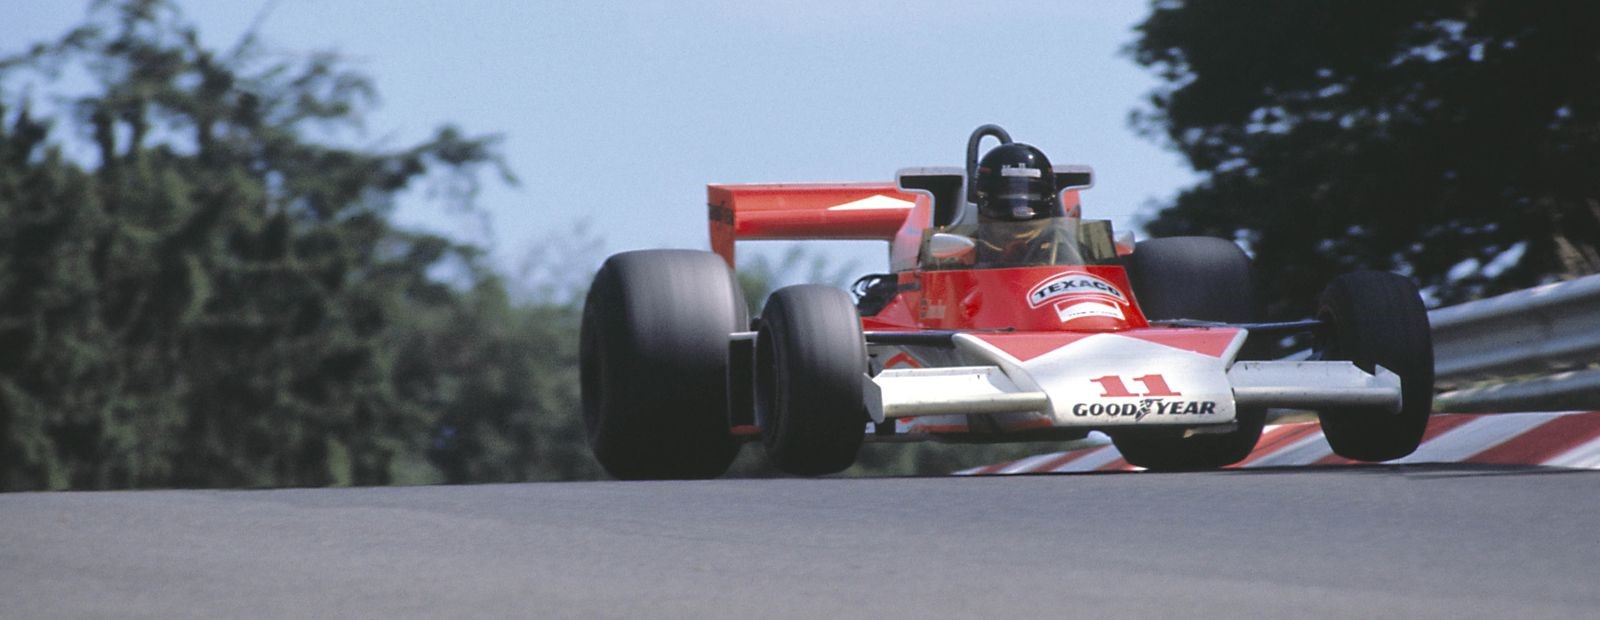 James Hunt at the 1976 German Grand Prix.